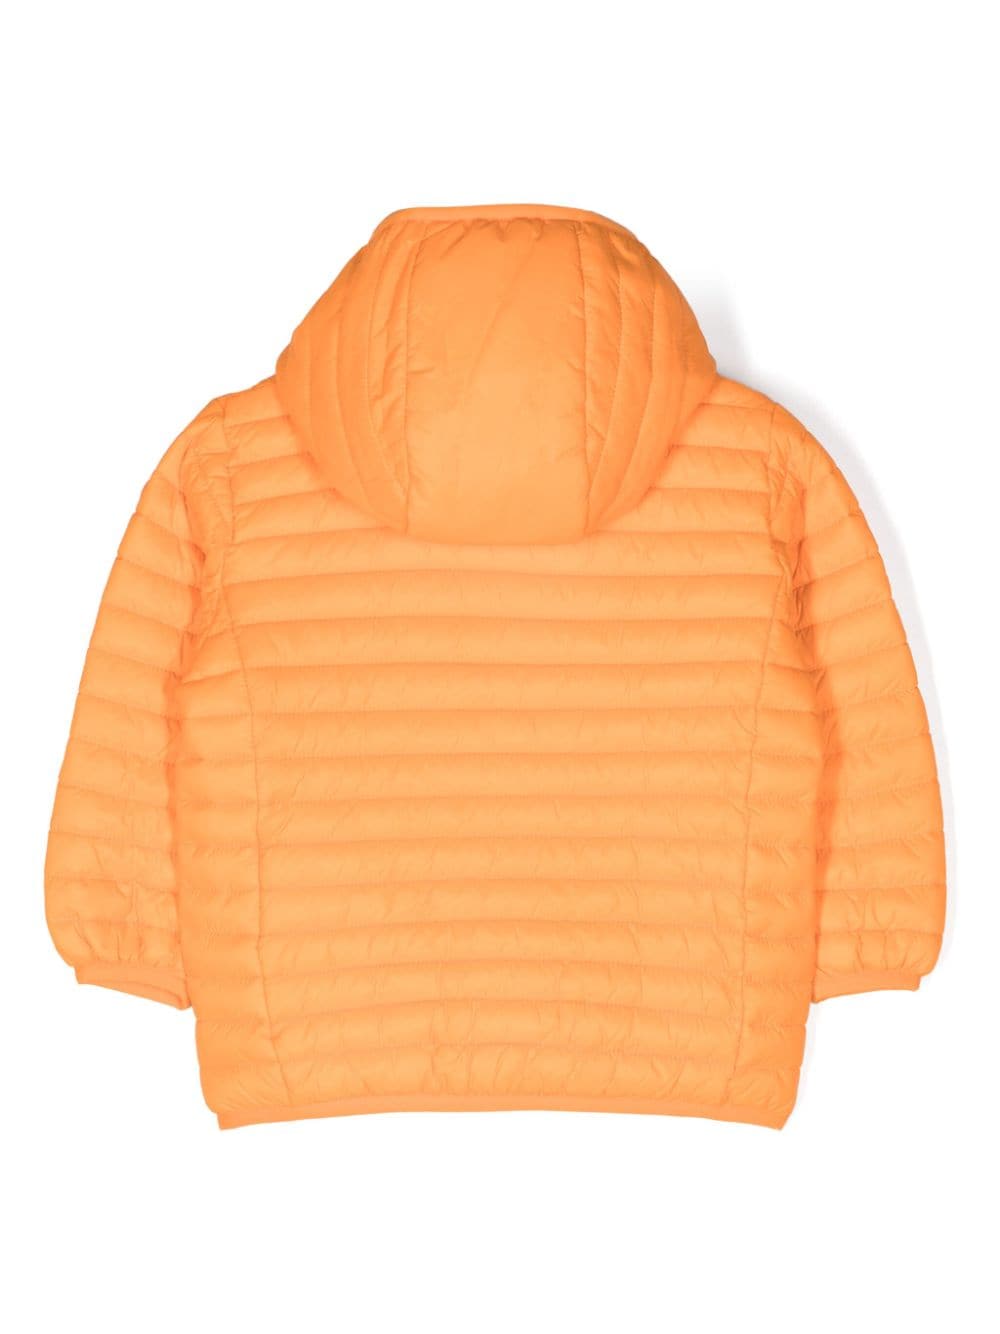 Orange baby jacket with logo